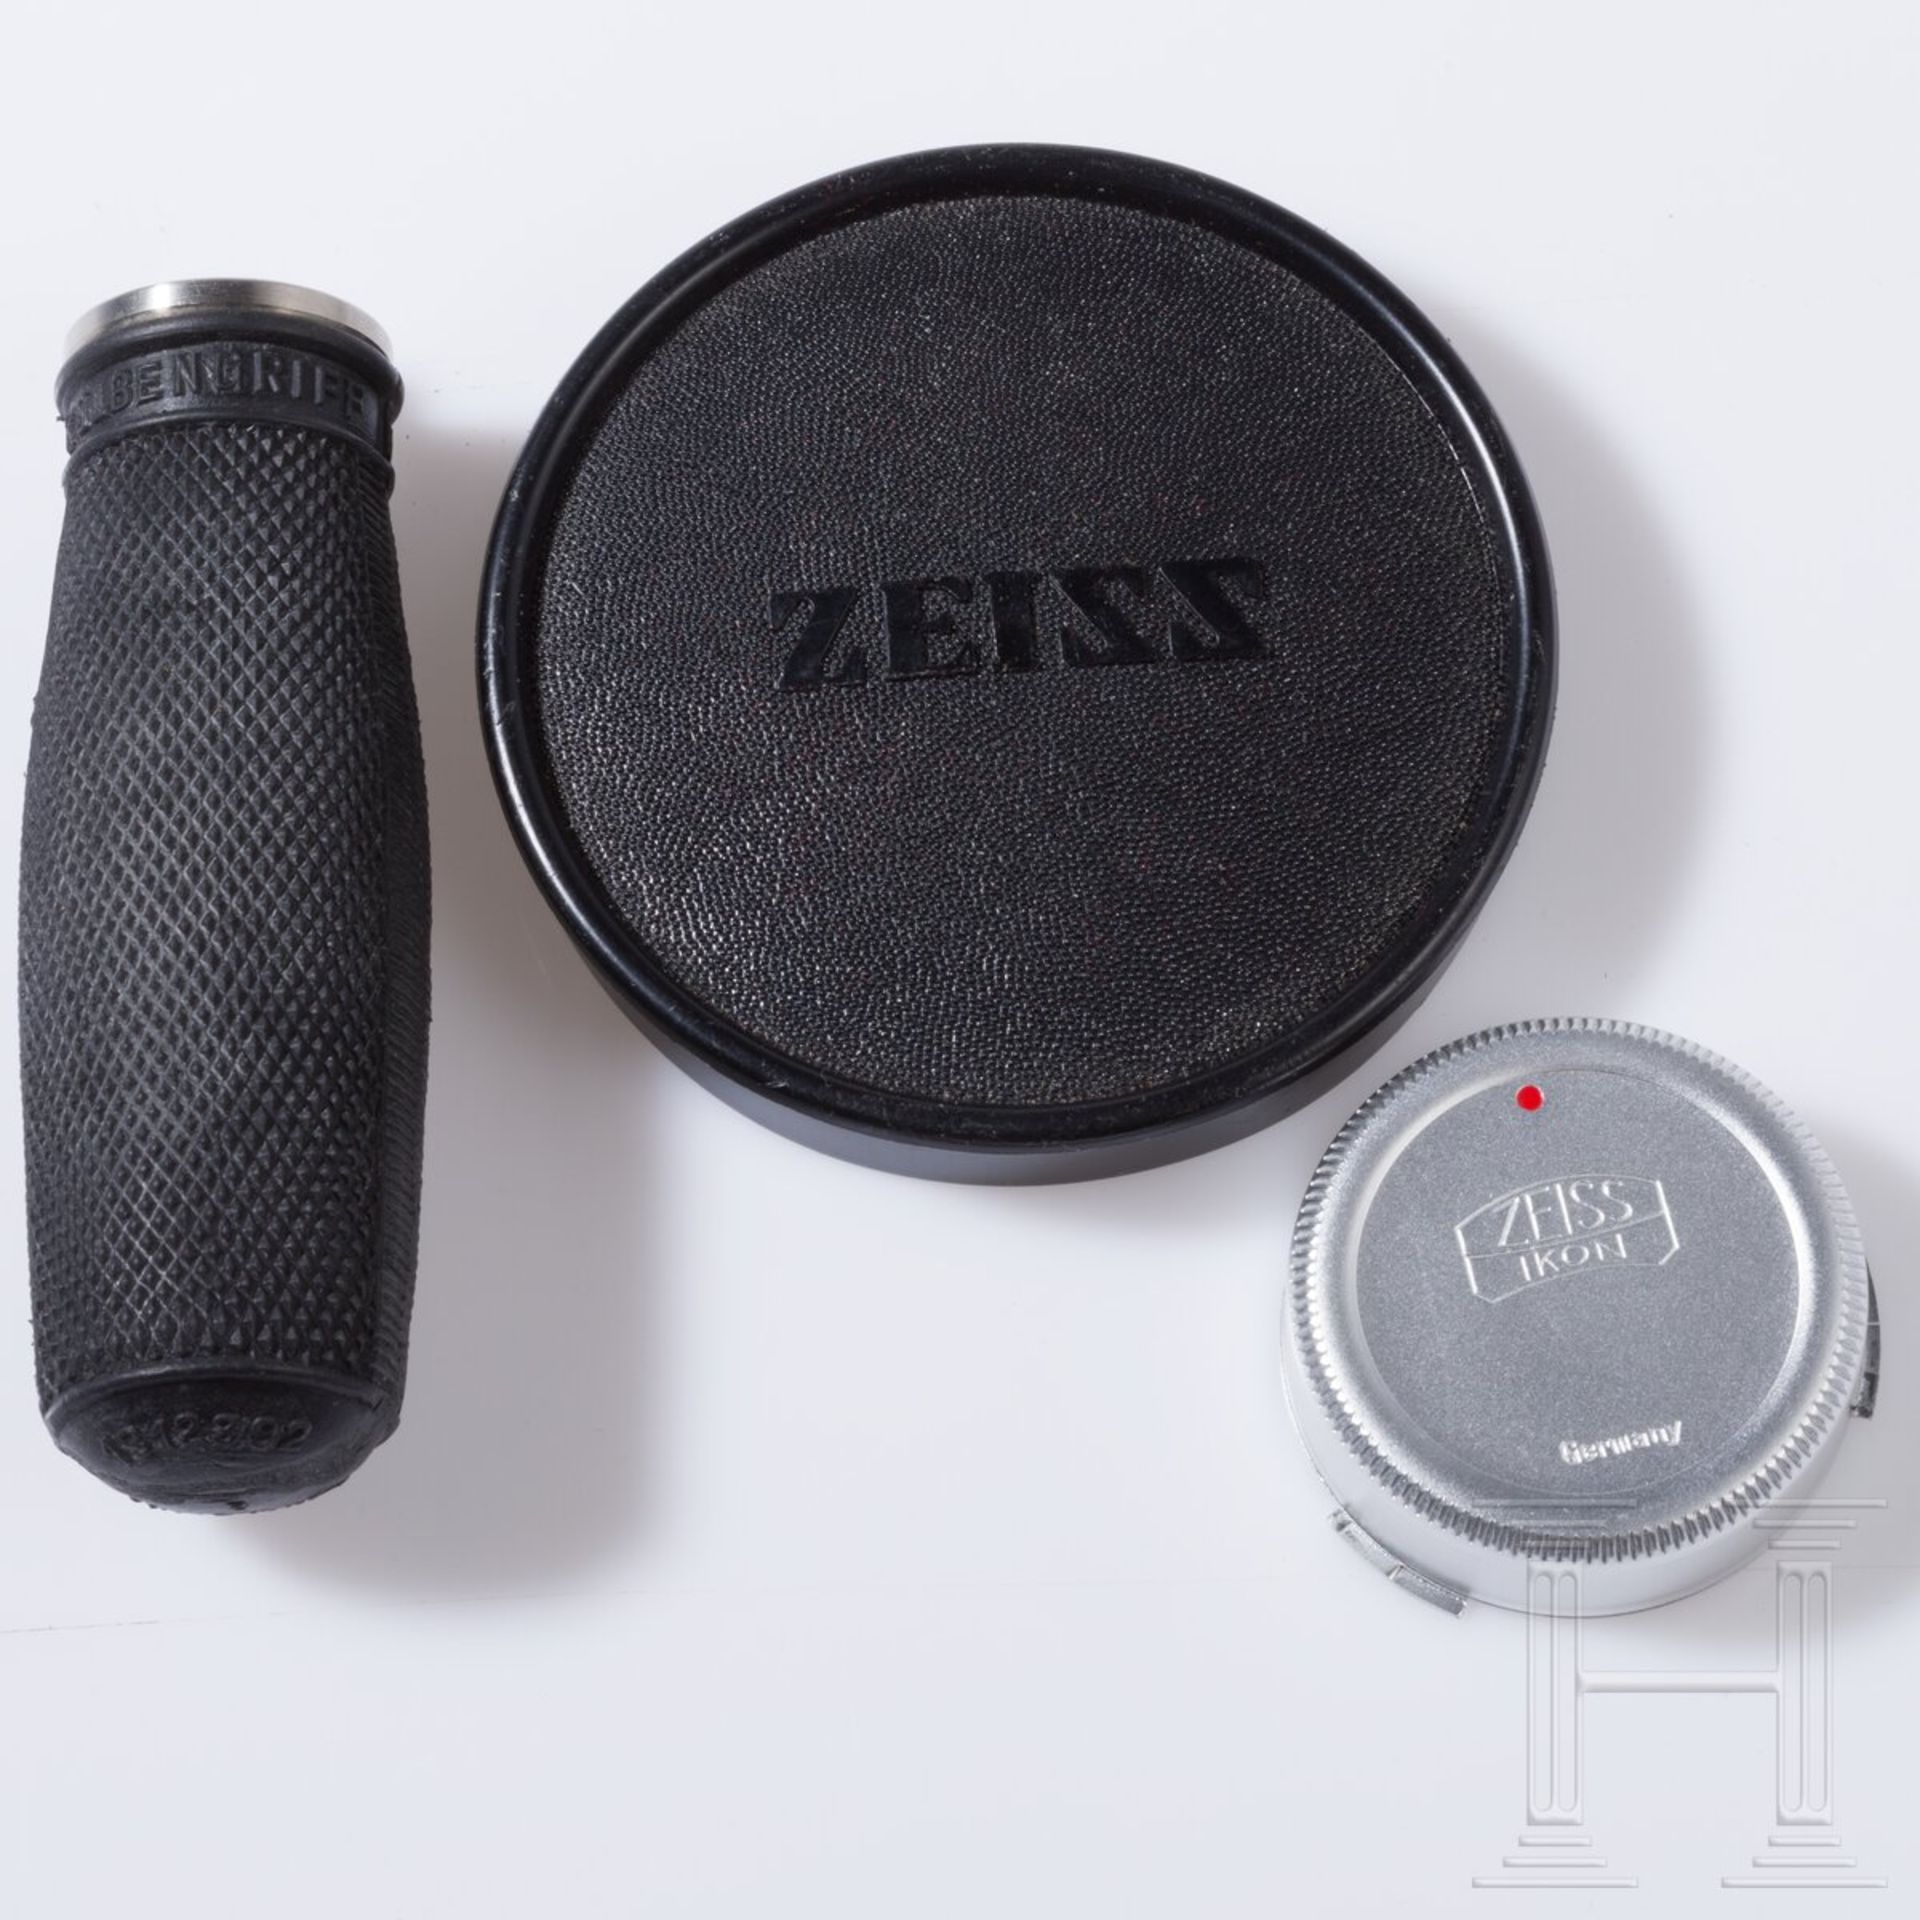 Objektiv Zeiss Tele-Tessar 1:5.6 400 mm - Bild 7 aus 7